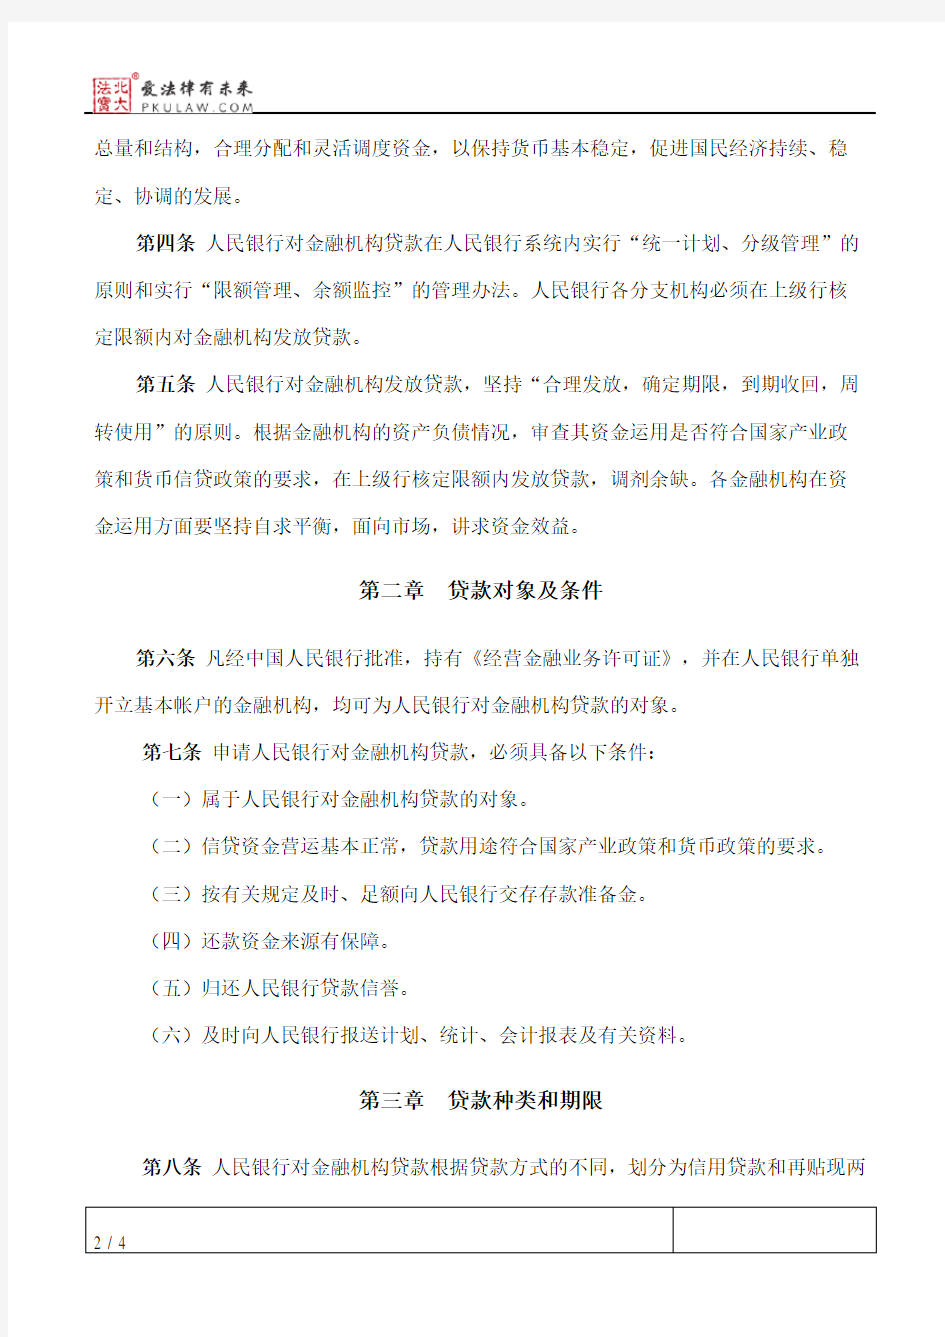 中国人民银行对金融机构贷款管理暂行办法